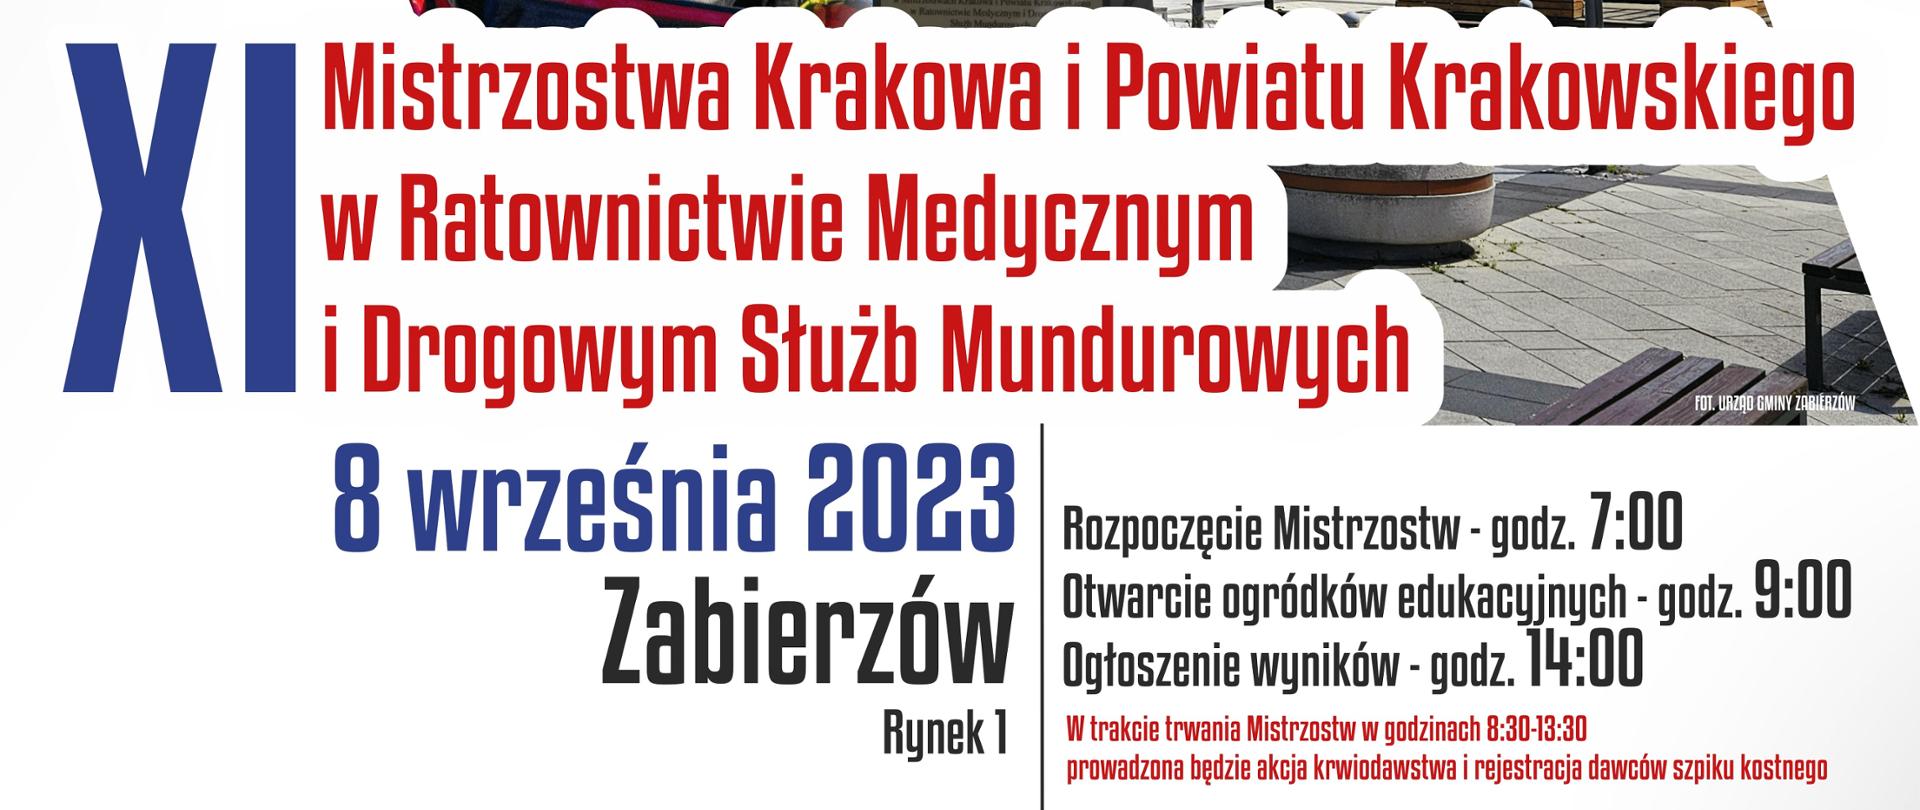 Plakat_Mistrzostrzwa_2023-